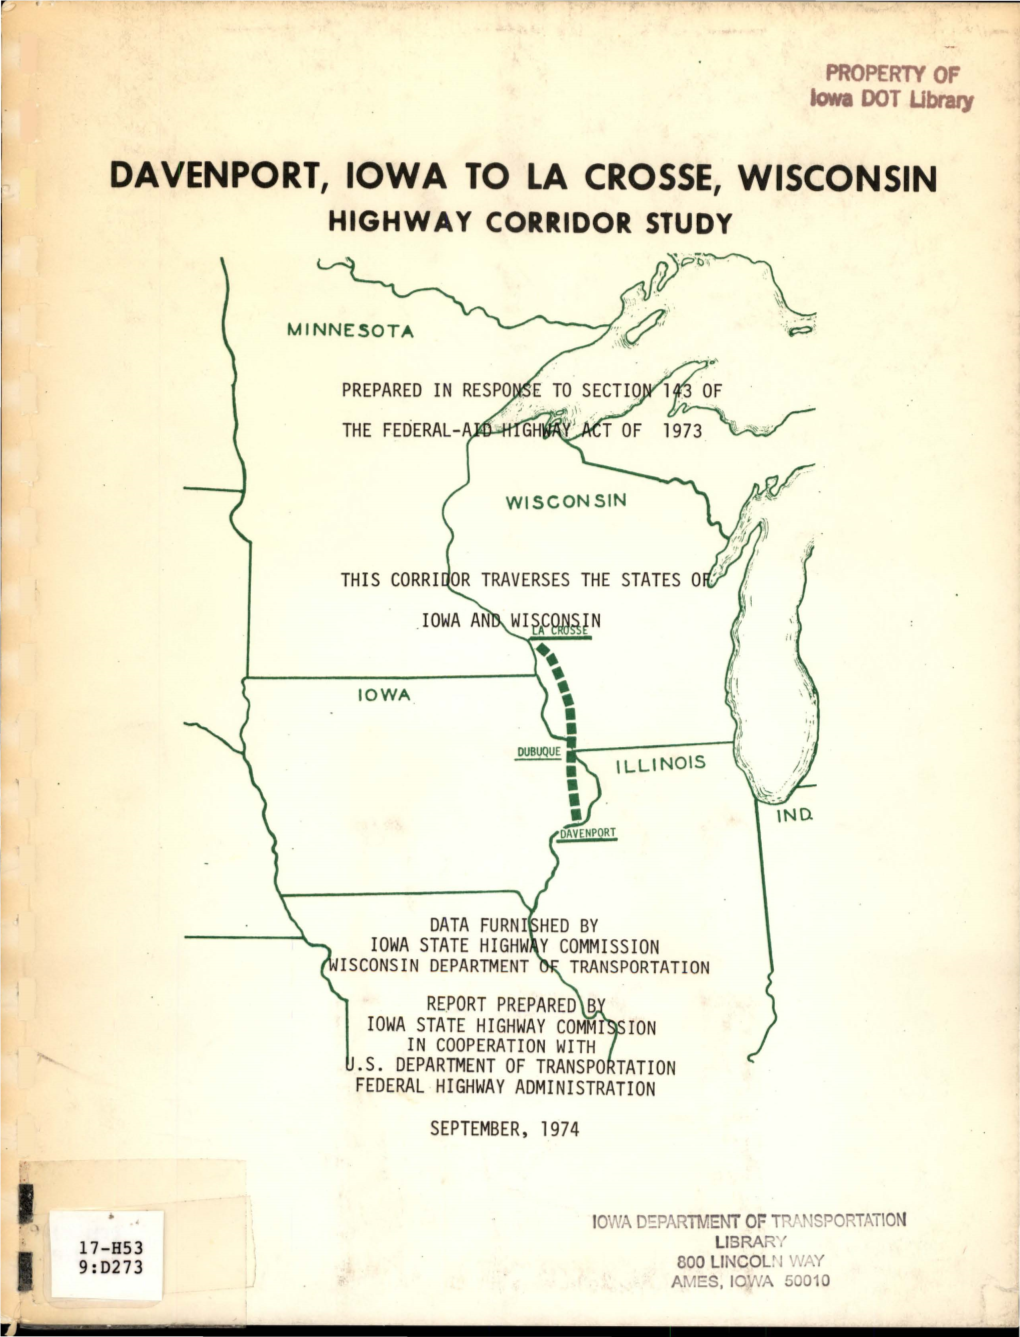 Davenport, Iowa to La Crosse, Wisconsin: Highway Corridor Study